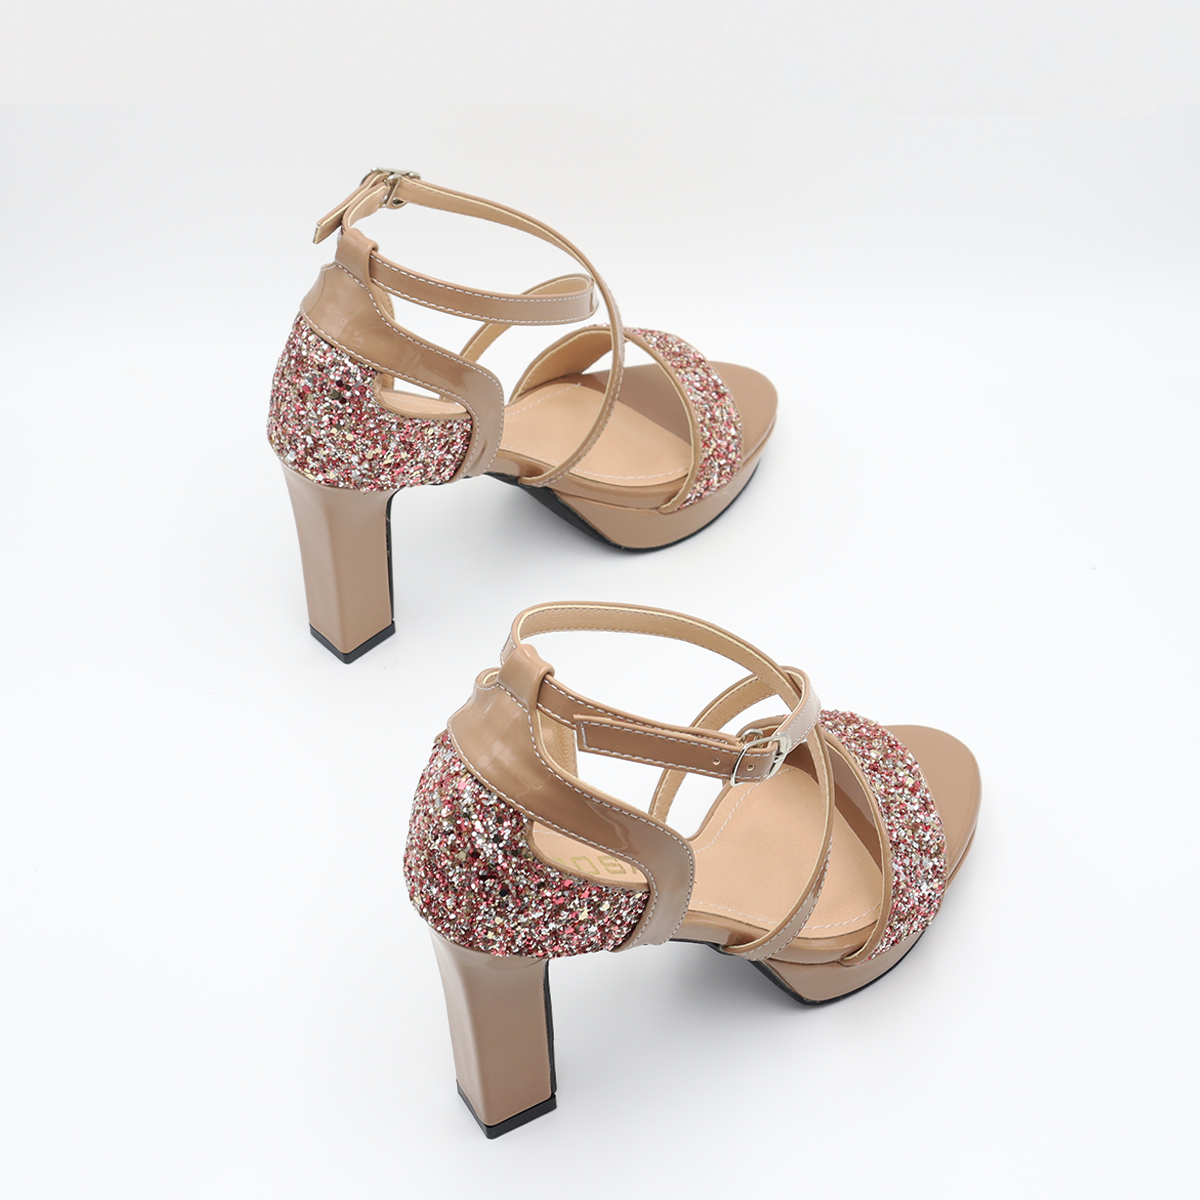 Giày sandal nữ cao gót 9 phân hàng hiệu rosata đẹp hai màu đen nâu ro563